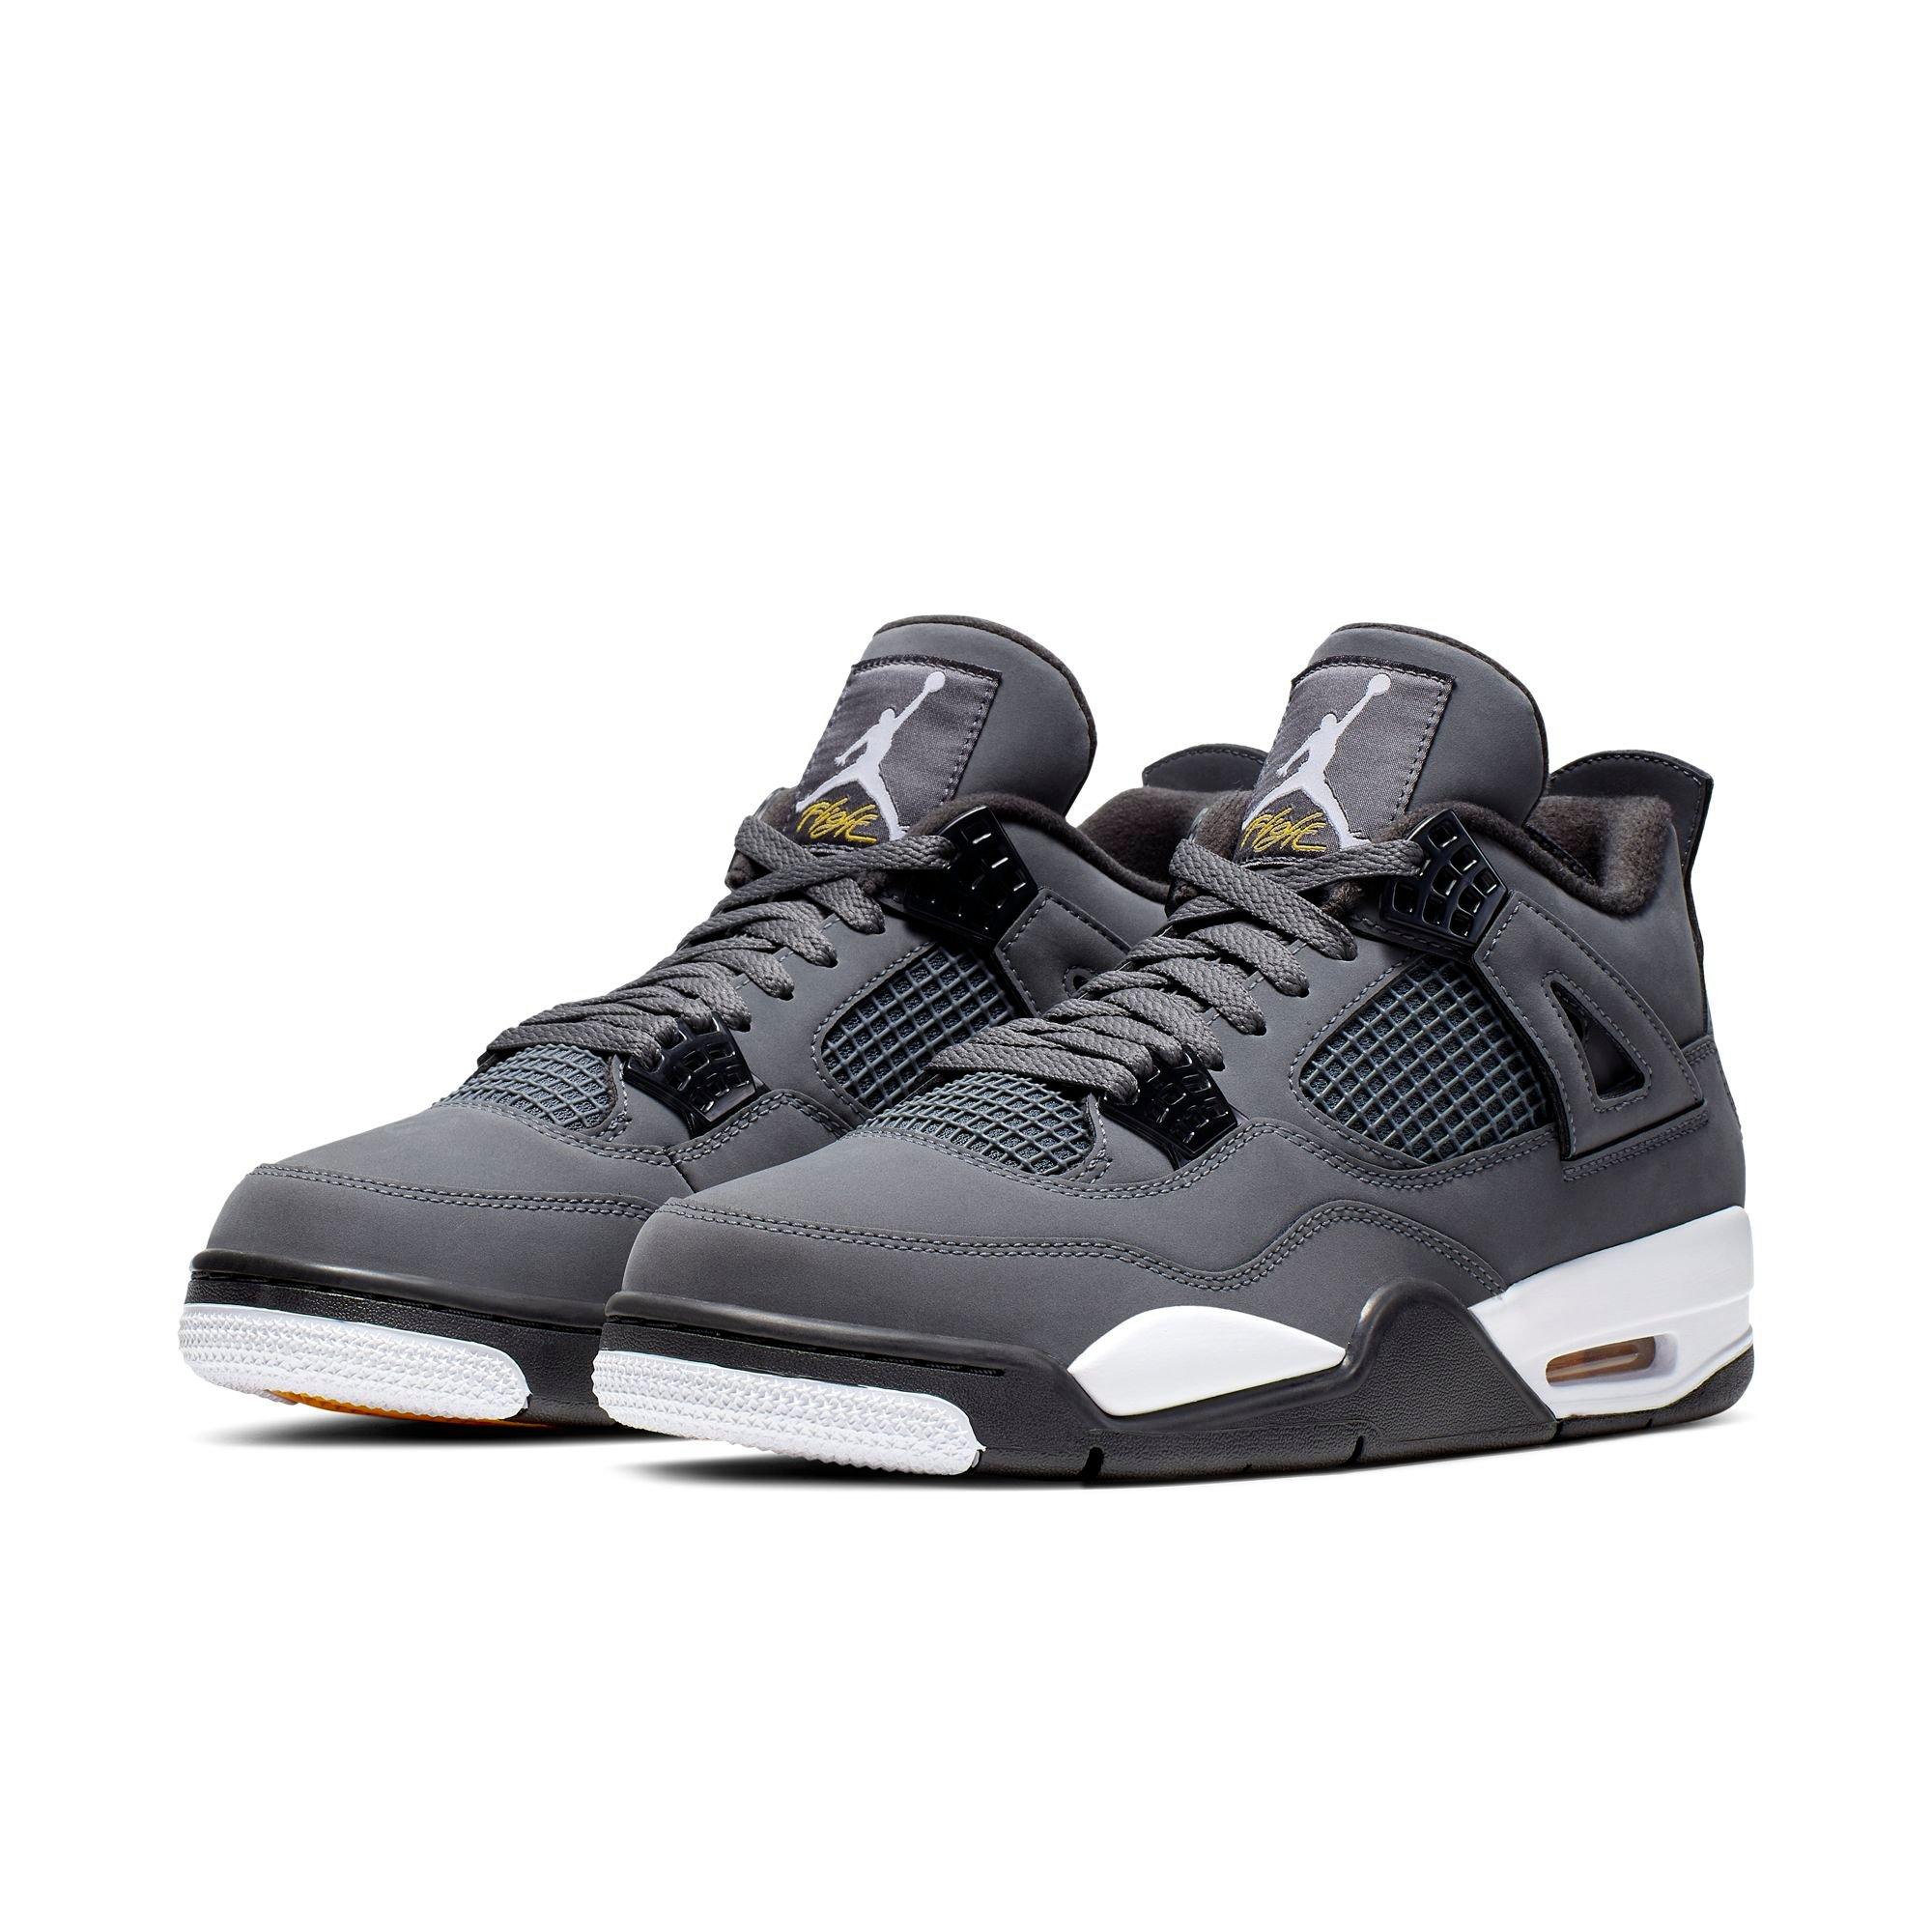 Sneaker Release: Air Jordan 4 Retro 